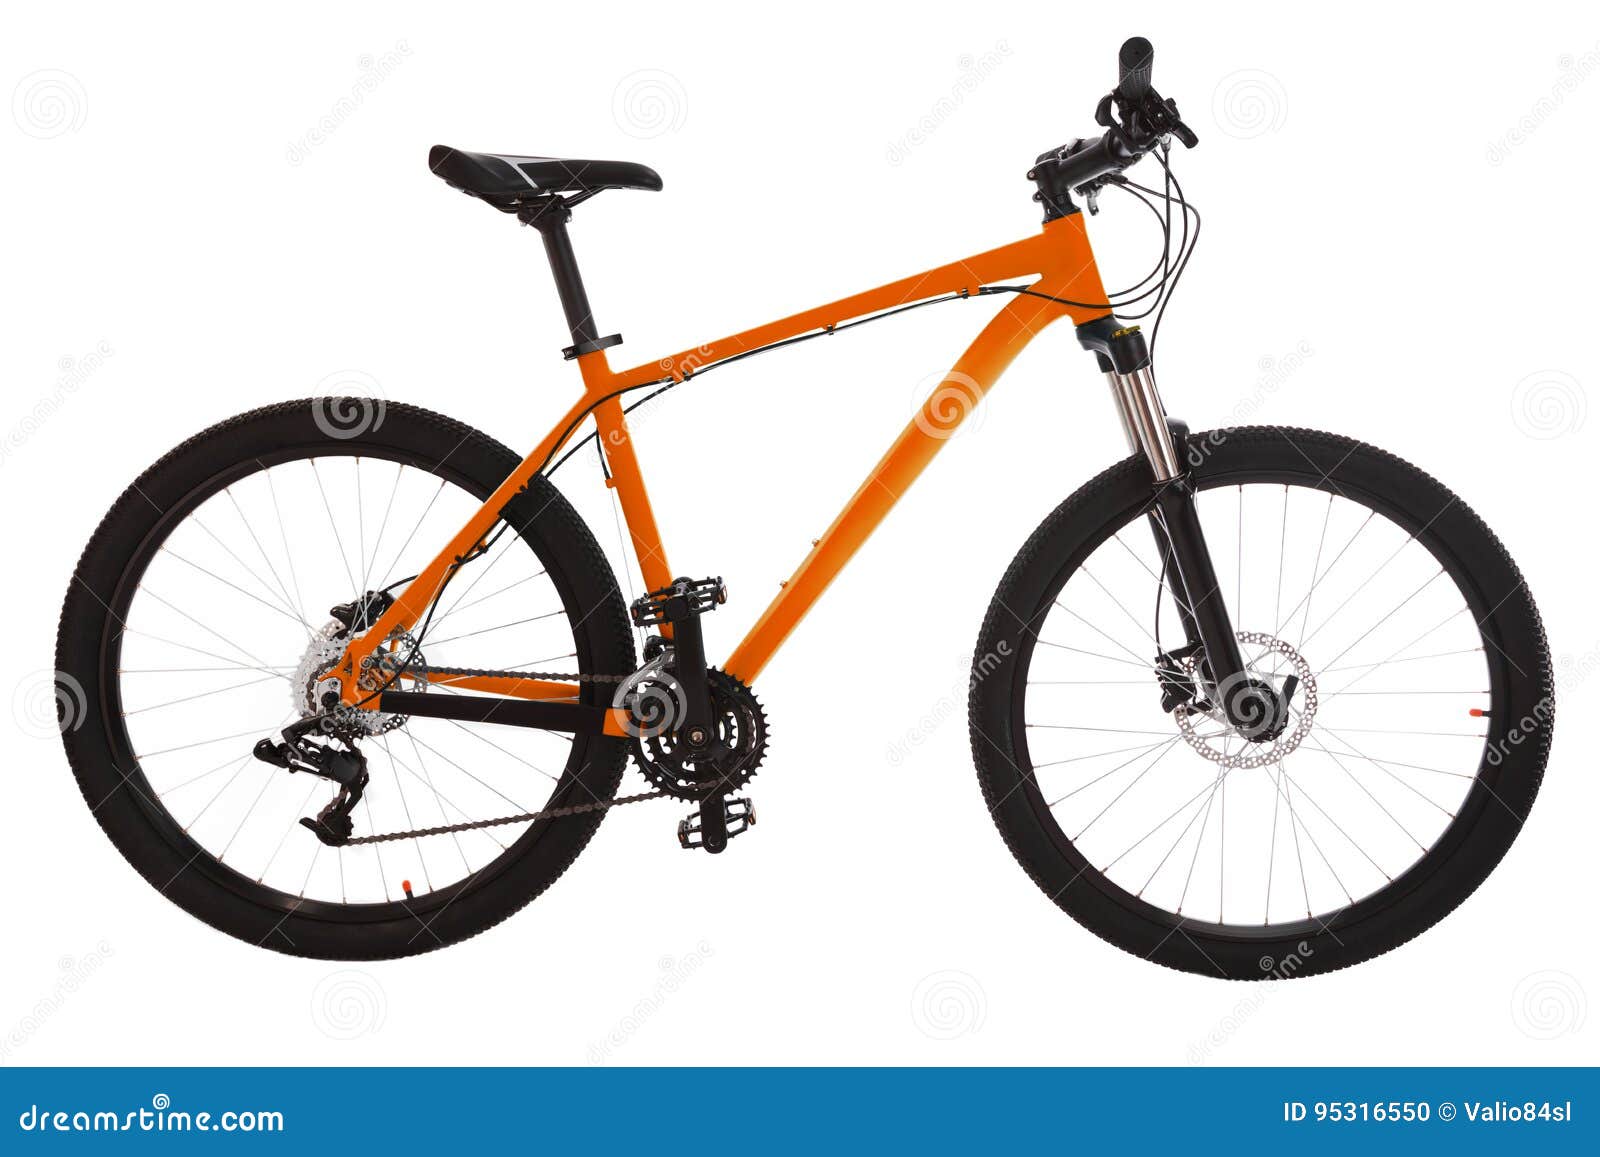 Bicicletas de naranja Cartel De Ciclismo Mtb naranja naranja 190 X 190mm blanco y naranja 